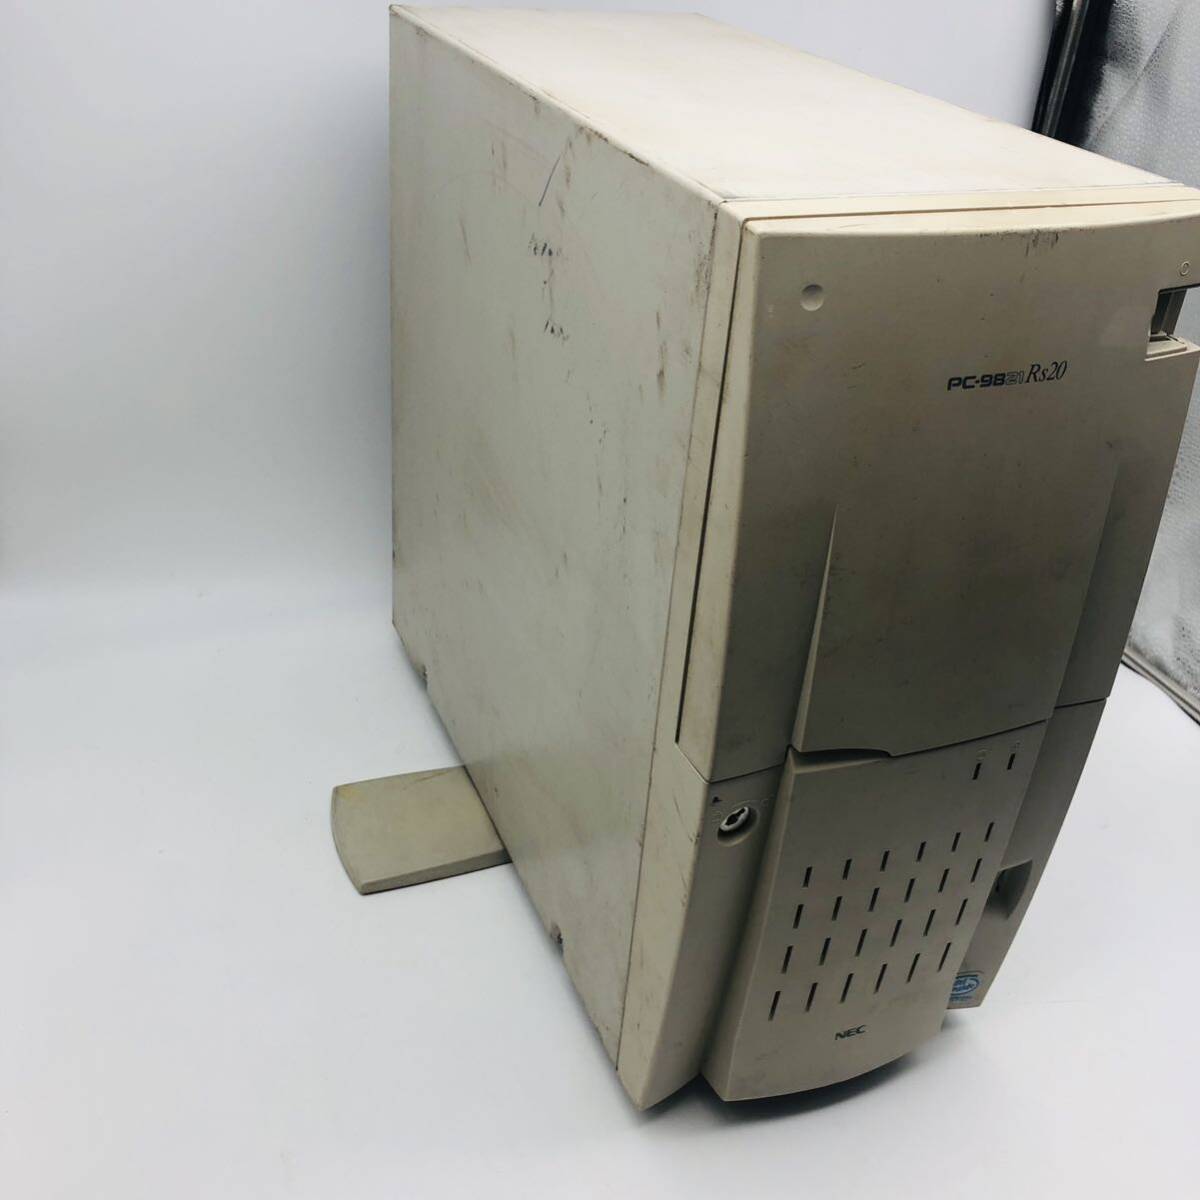 NEC PC-9821 Rs20/B20 本体のみ デスクトップPC◆ジャンク 未チェック 現状品 レトロ パソコン 98シリーズ 部品取りの画像7